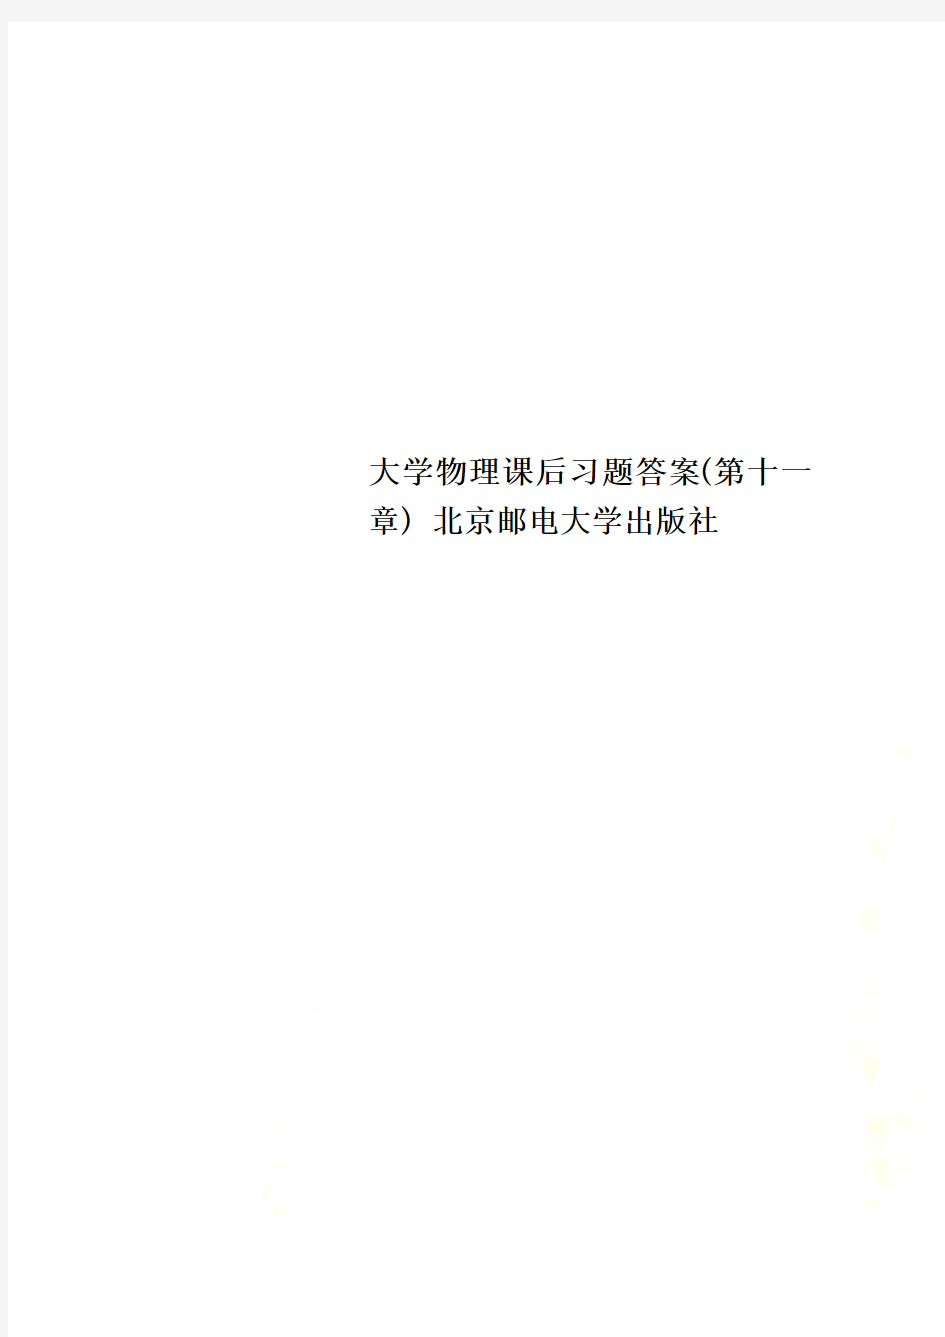 大学物理课后习题答案(第十一章) 北京邮电大学出版社